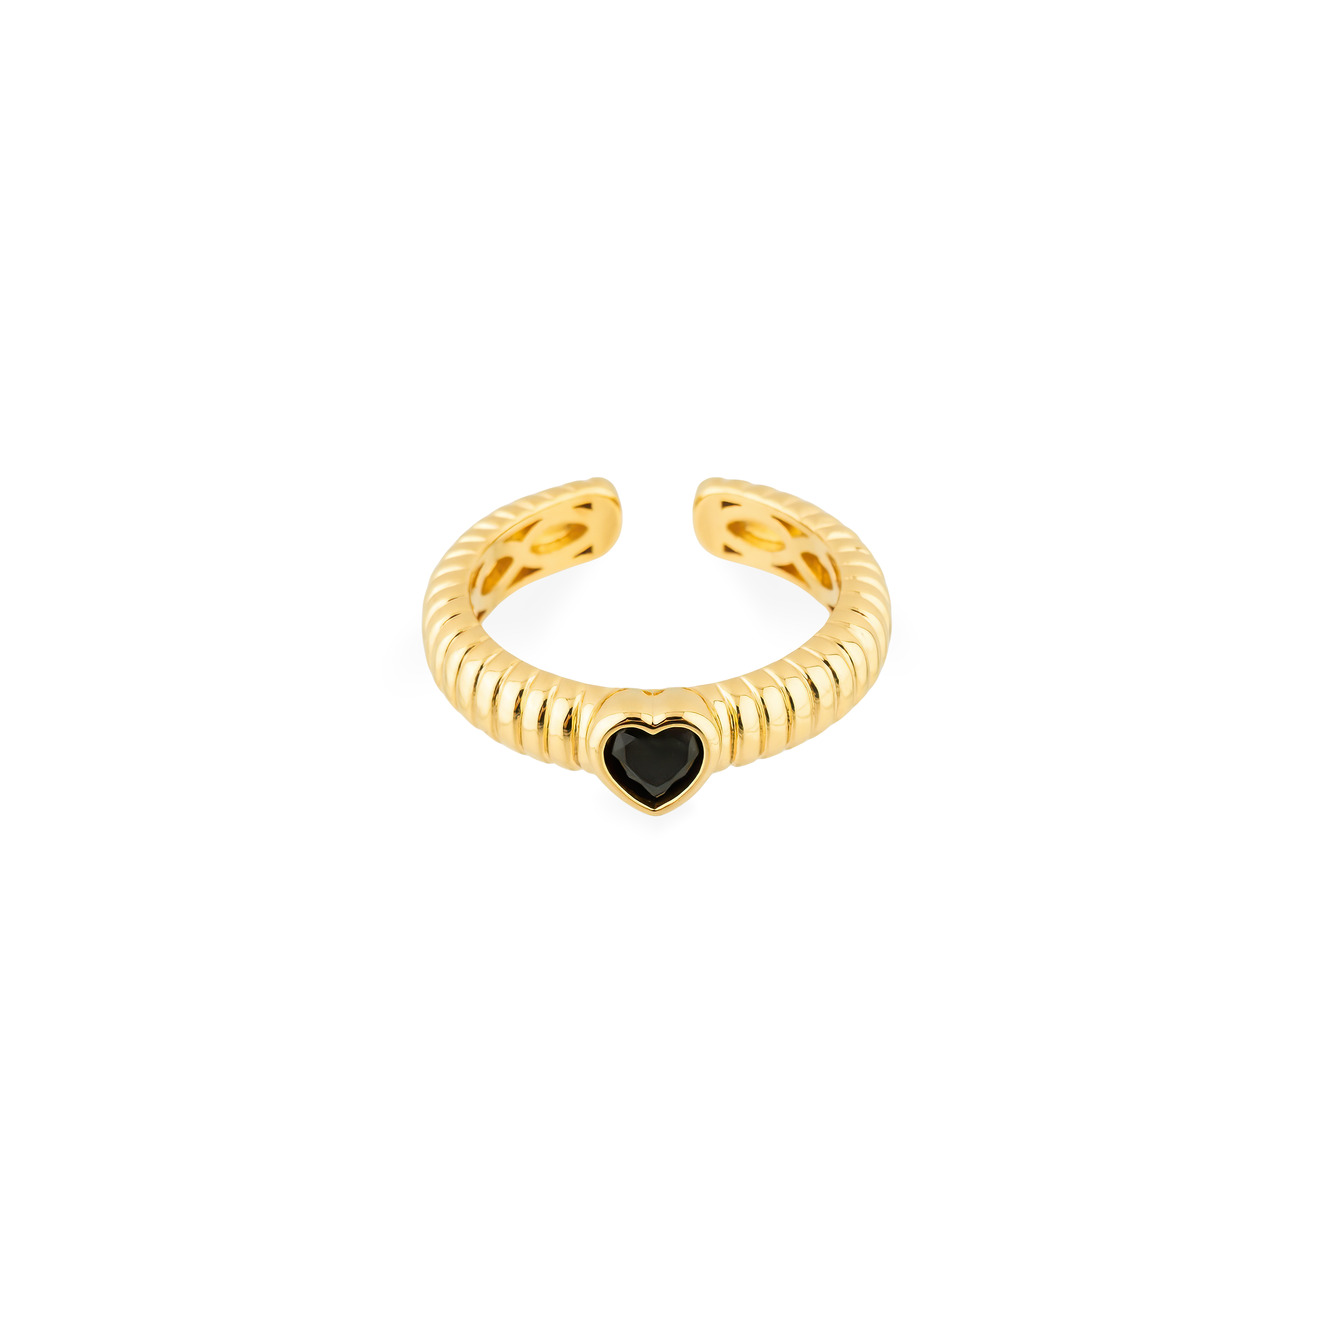 Herald Percy Золотистое фигурное кольцо с черным сердцем